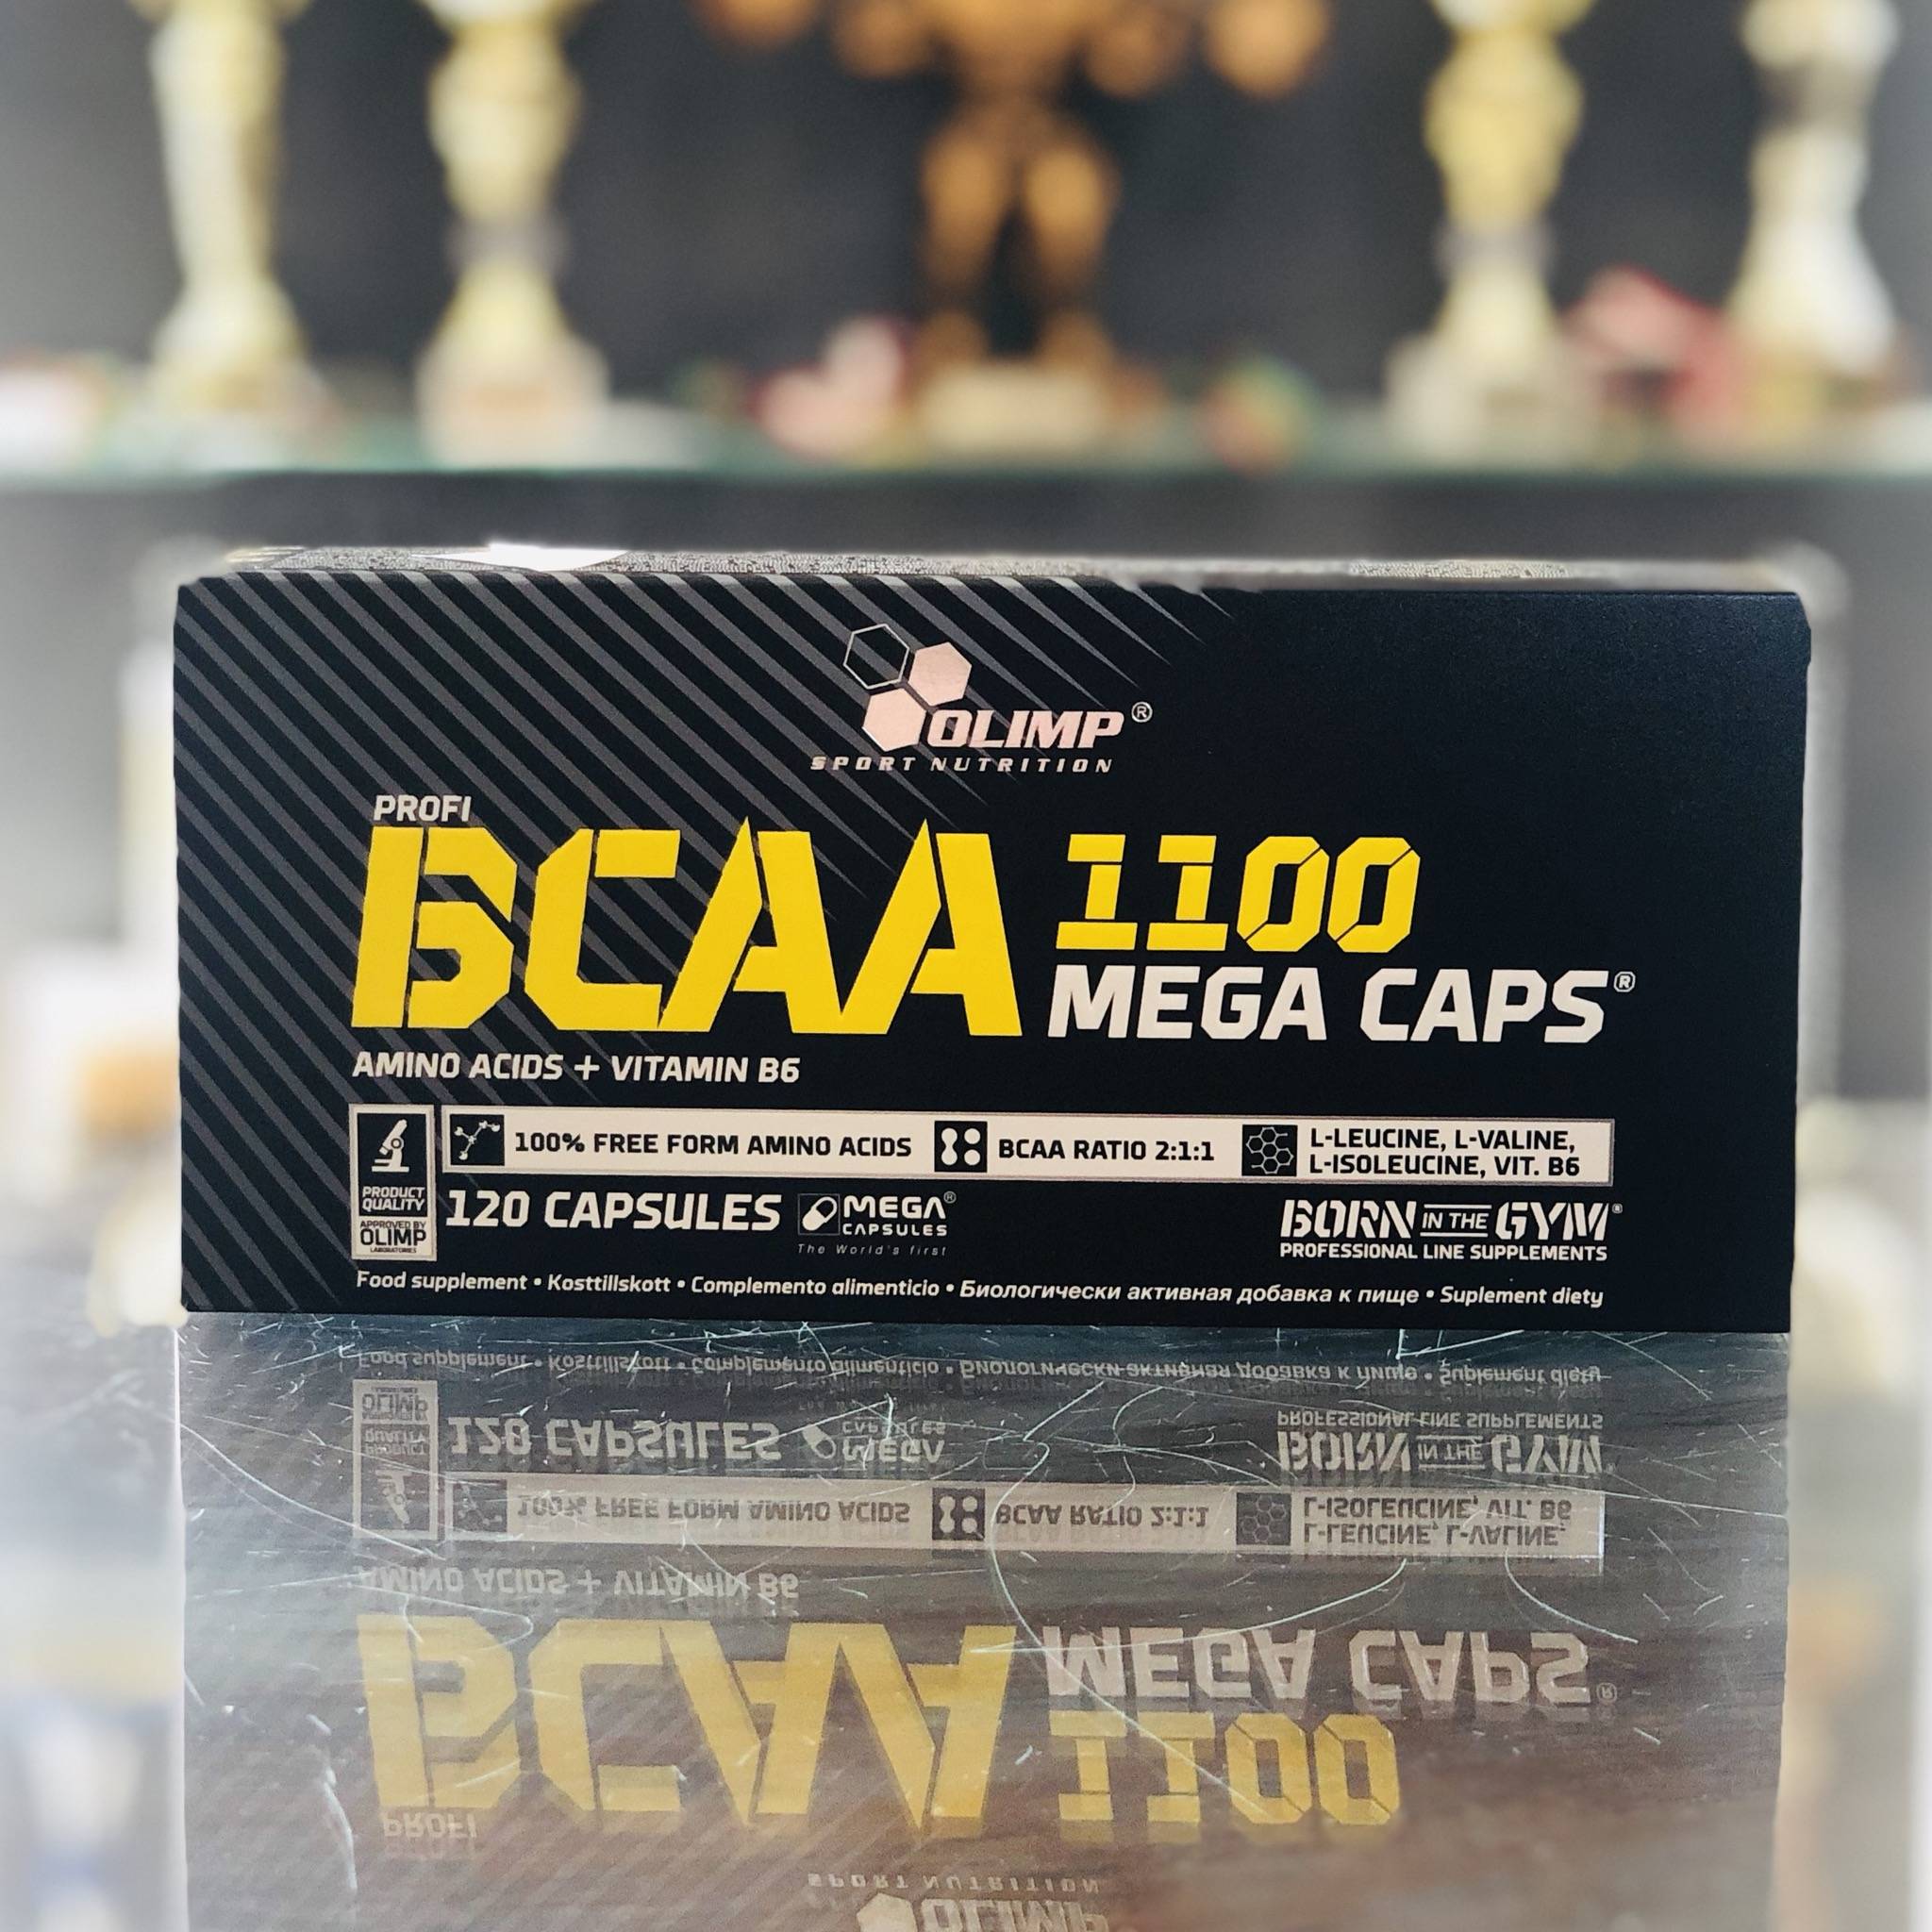 Bcaa mega caps 1100 от olimp: как принимать, состав и отзывы